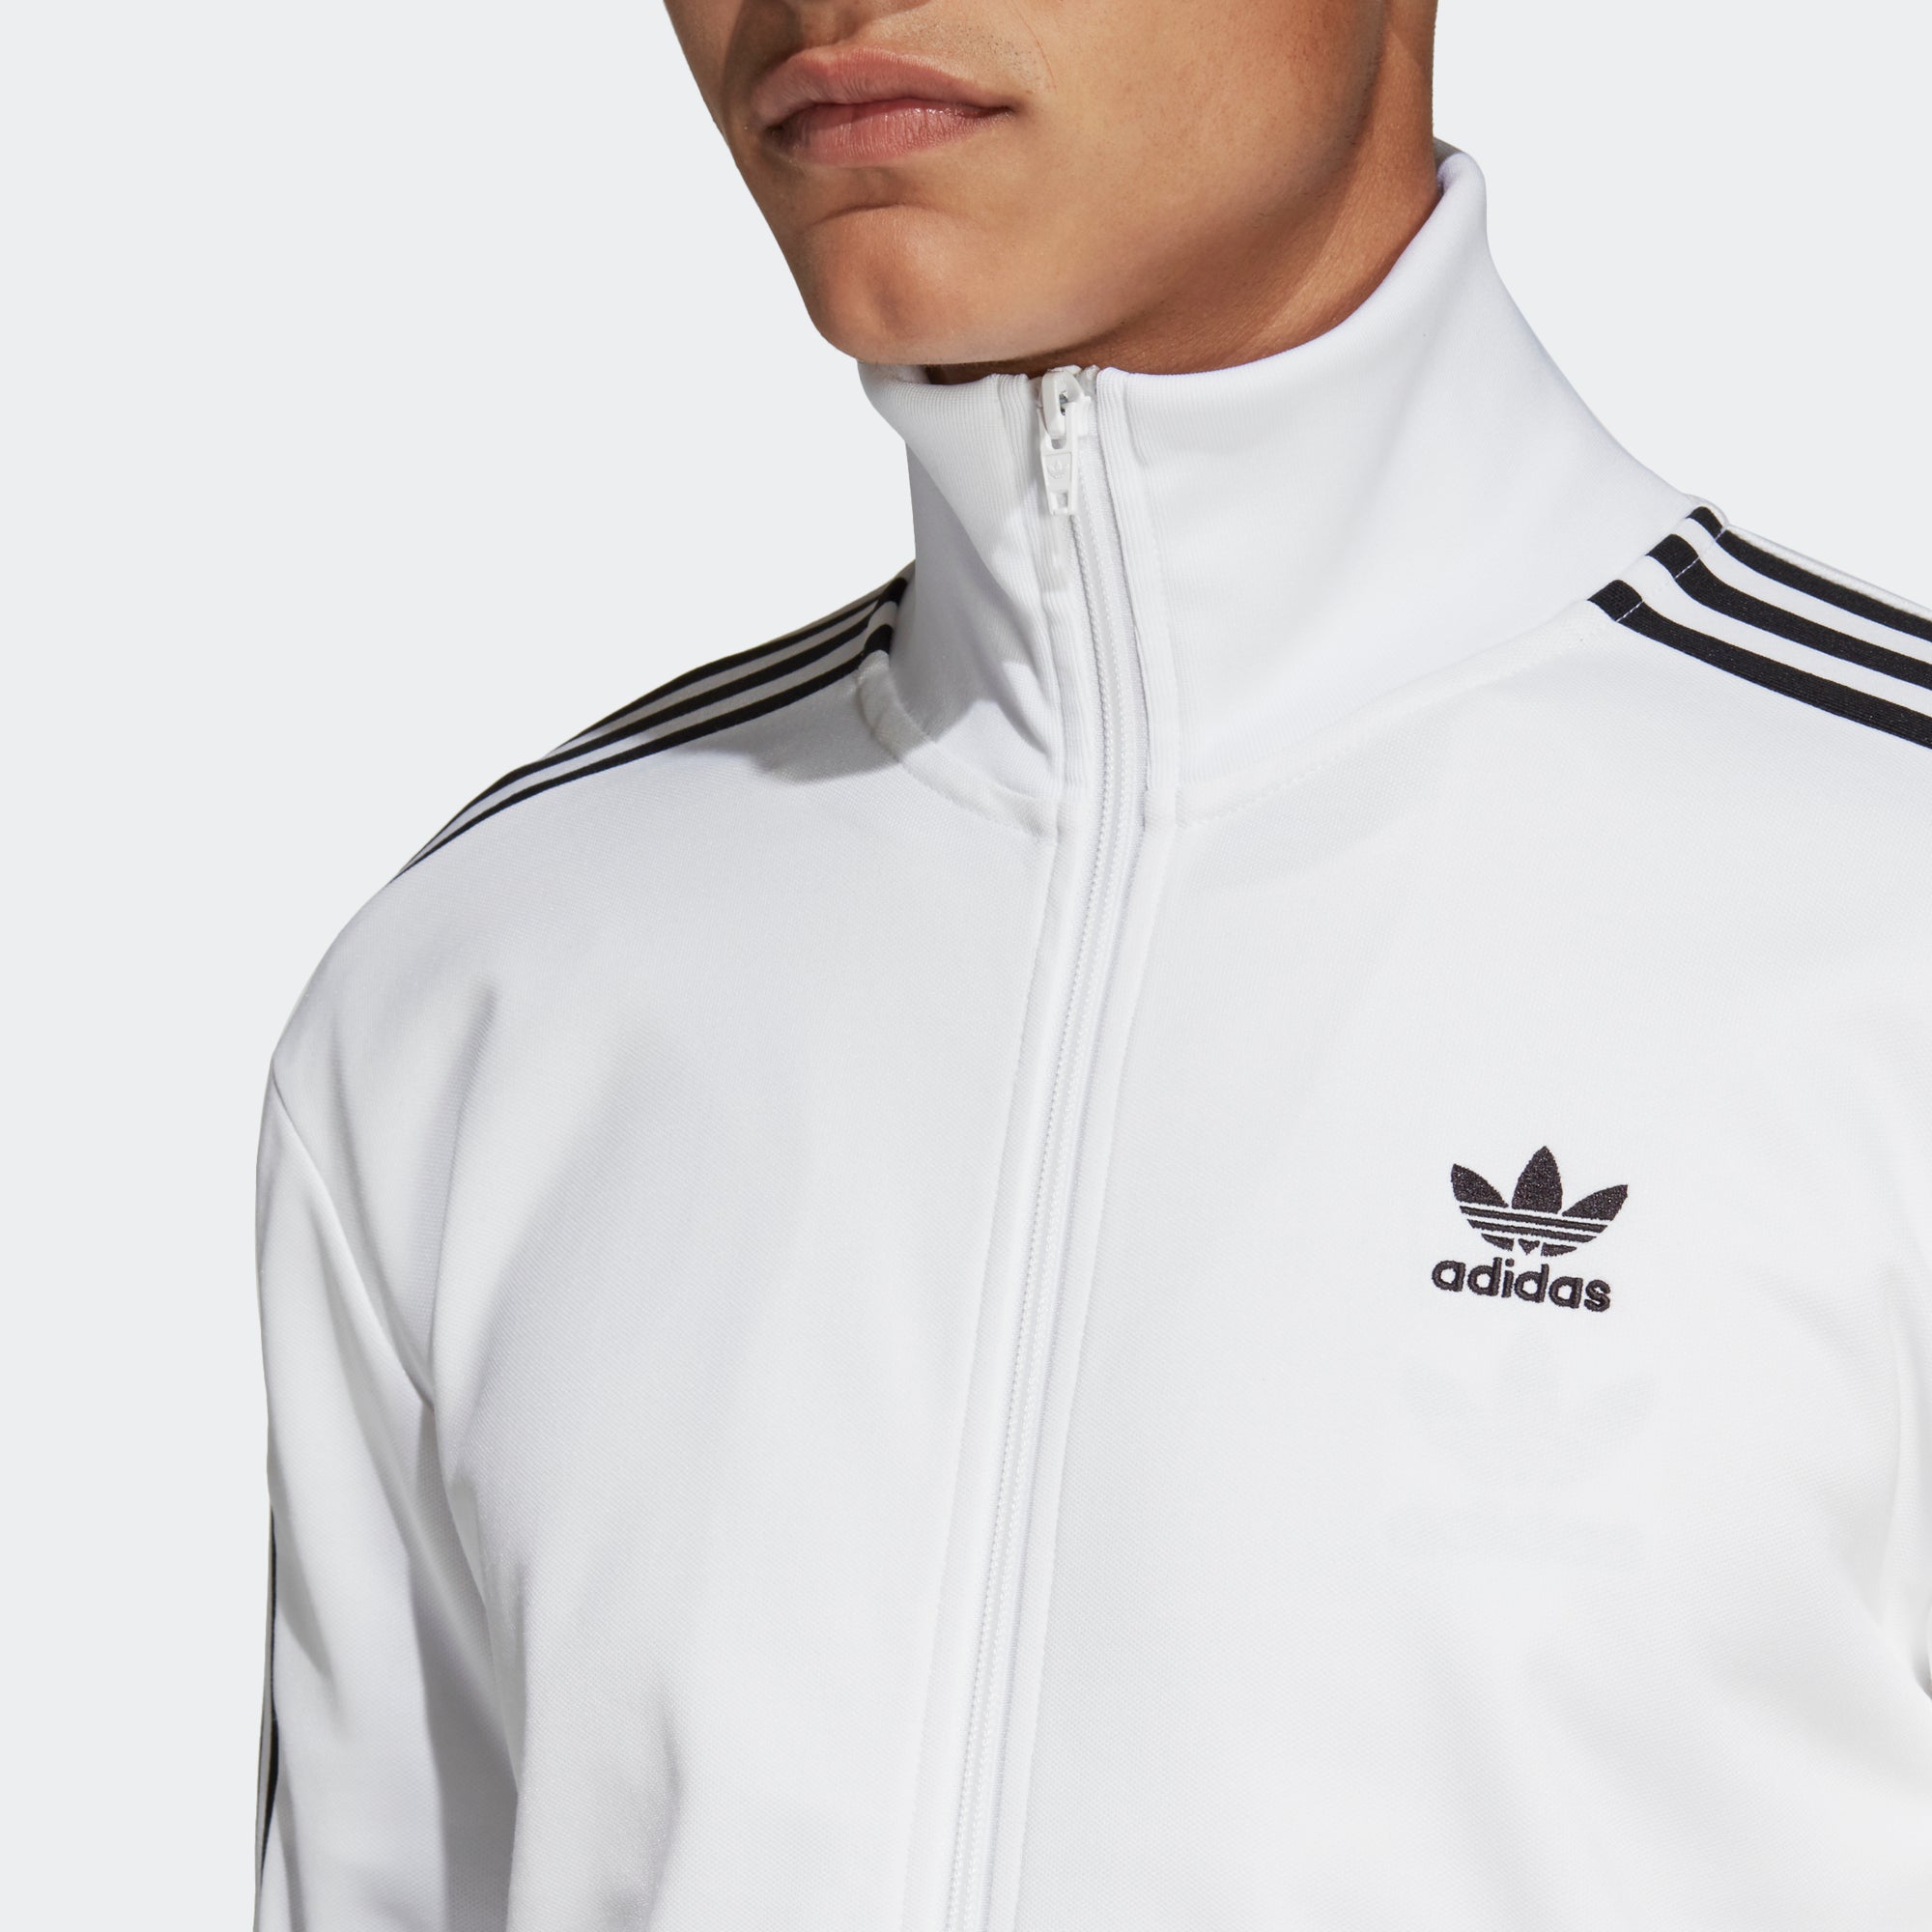 adidas bb track jacket white